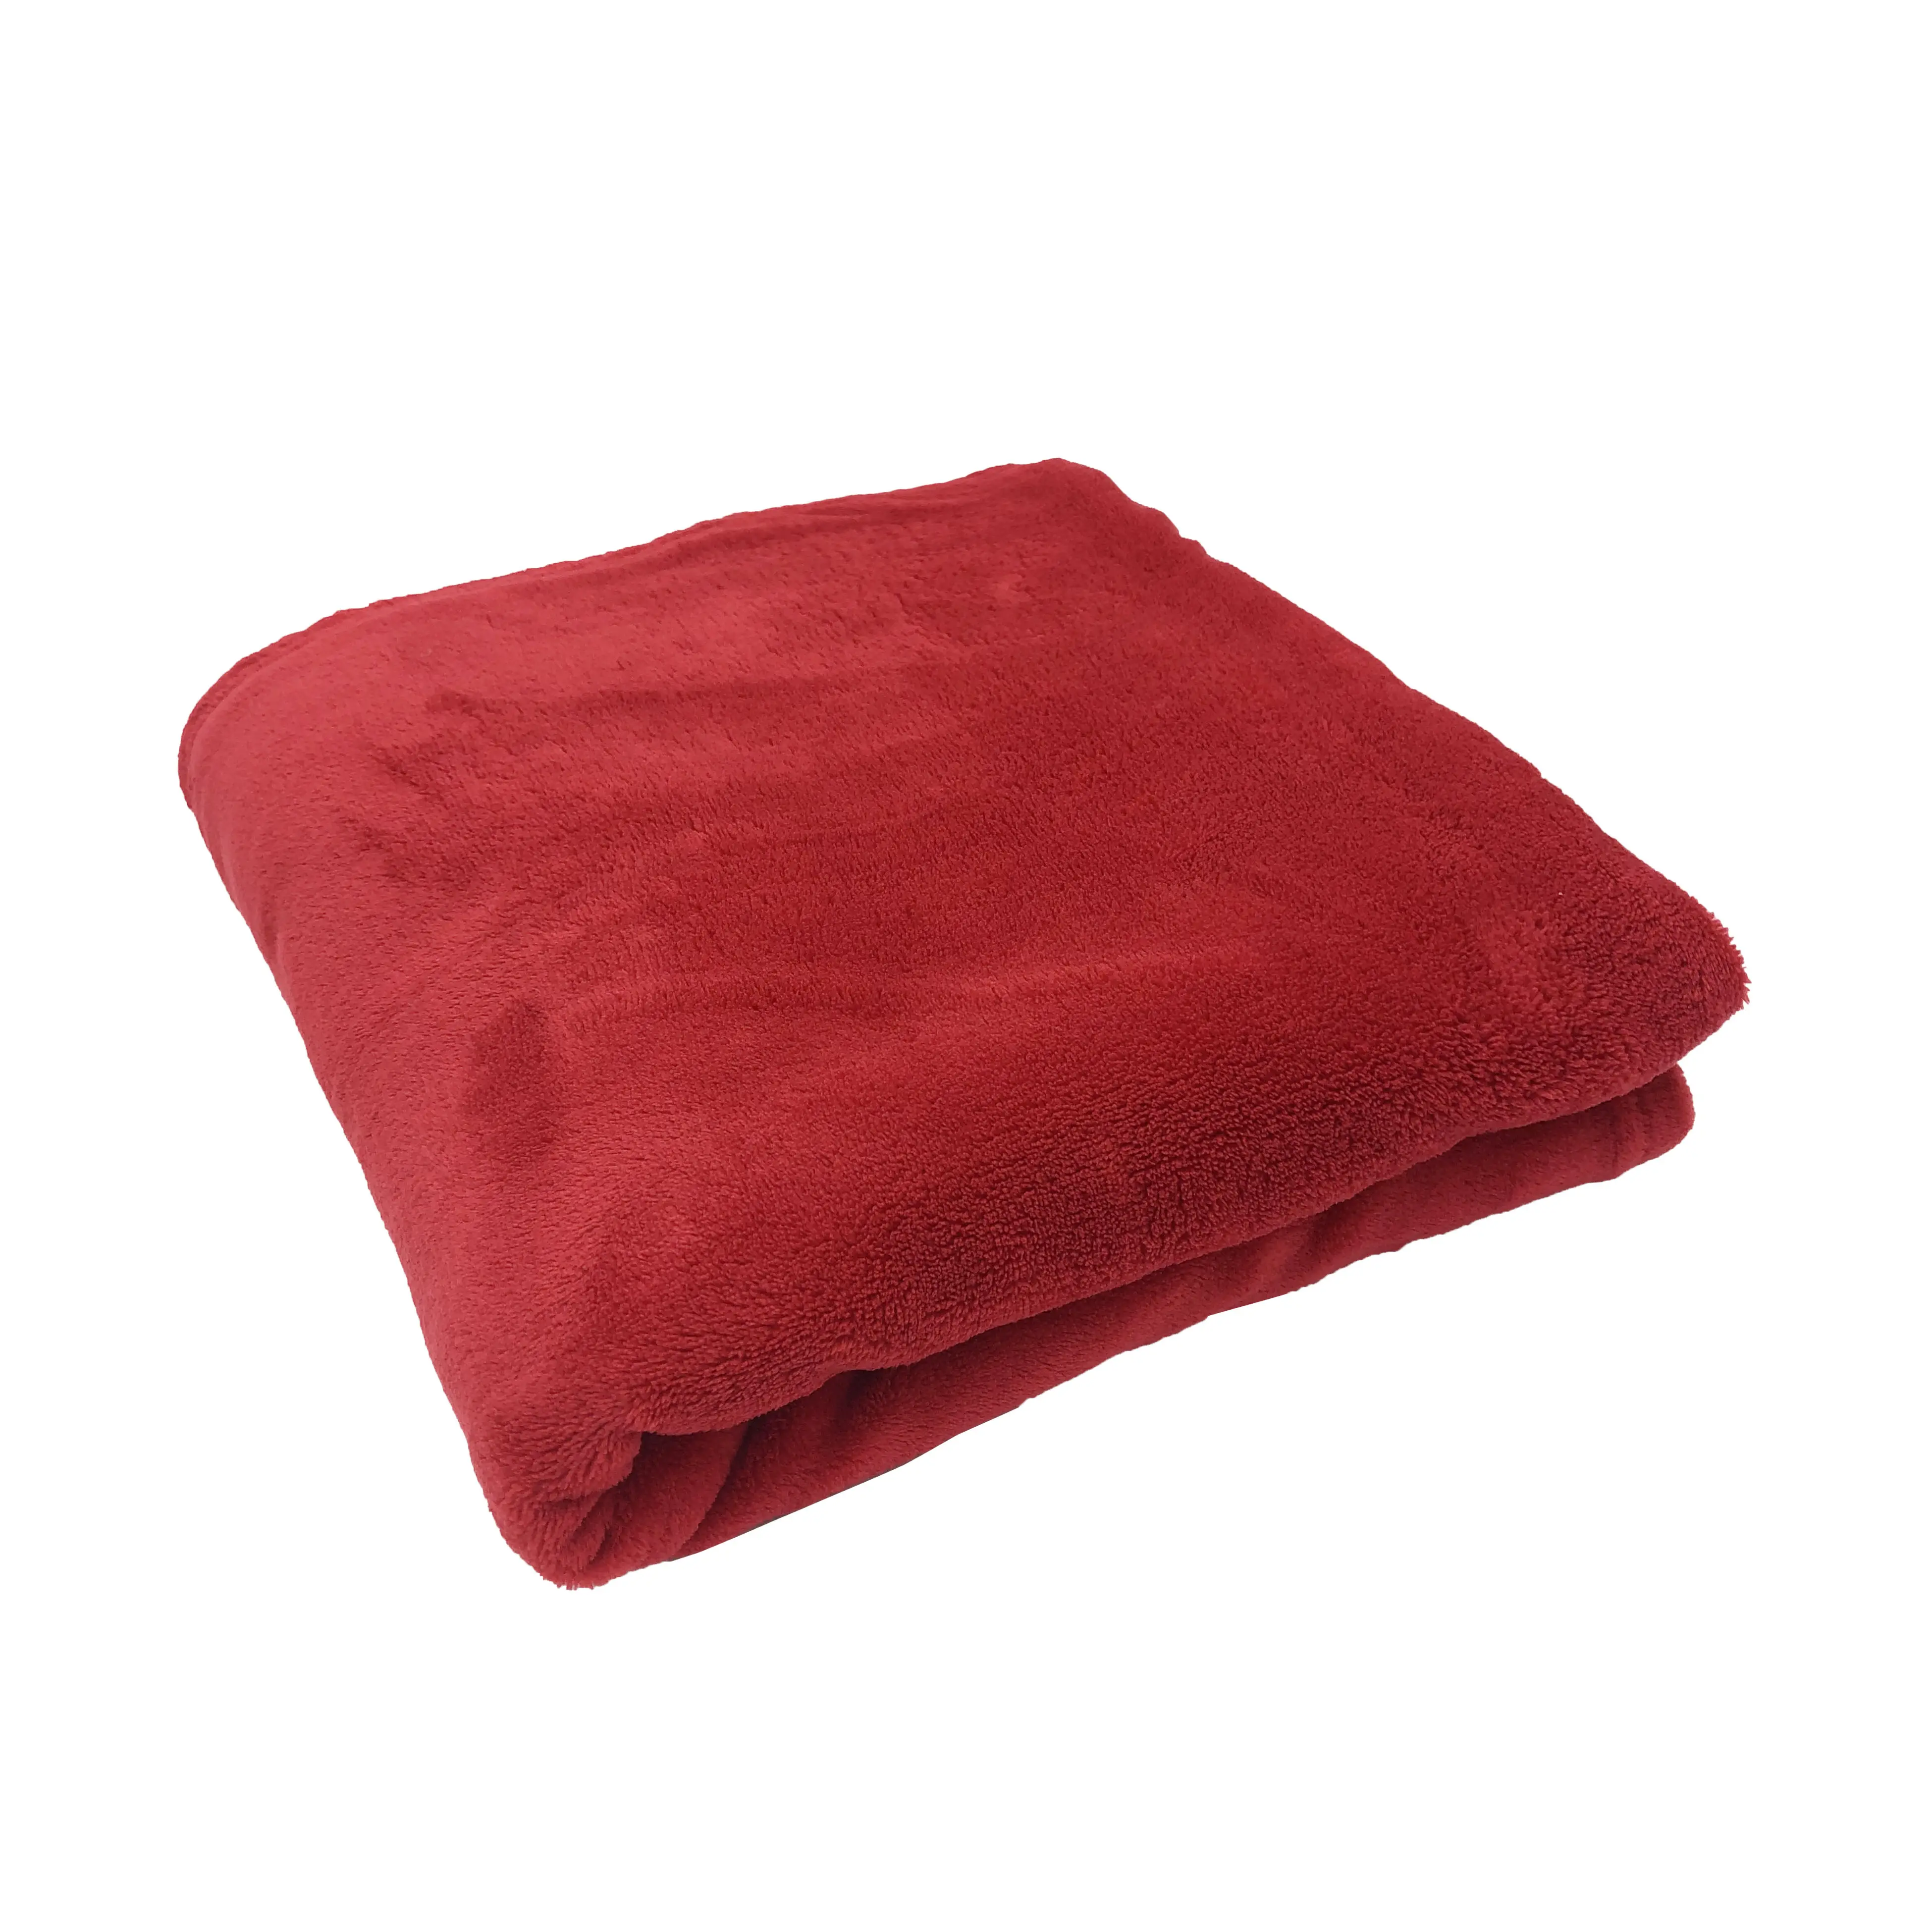 160*210 सेमी आकार 100% पॉलिएस्टर कंबल थोक सस्ते ठोस रंग कोरल मखमल कंबल पूरे मौसम में फेंक दिया जा सकता है।